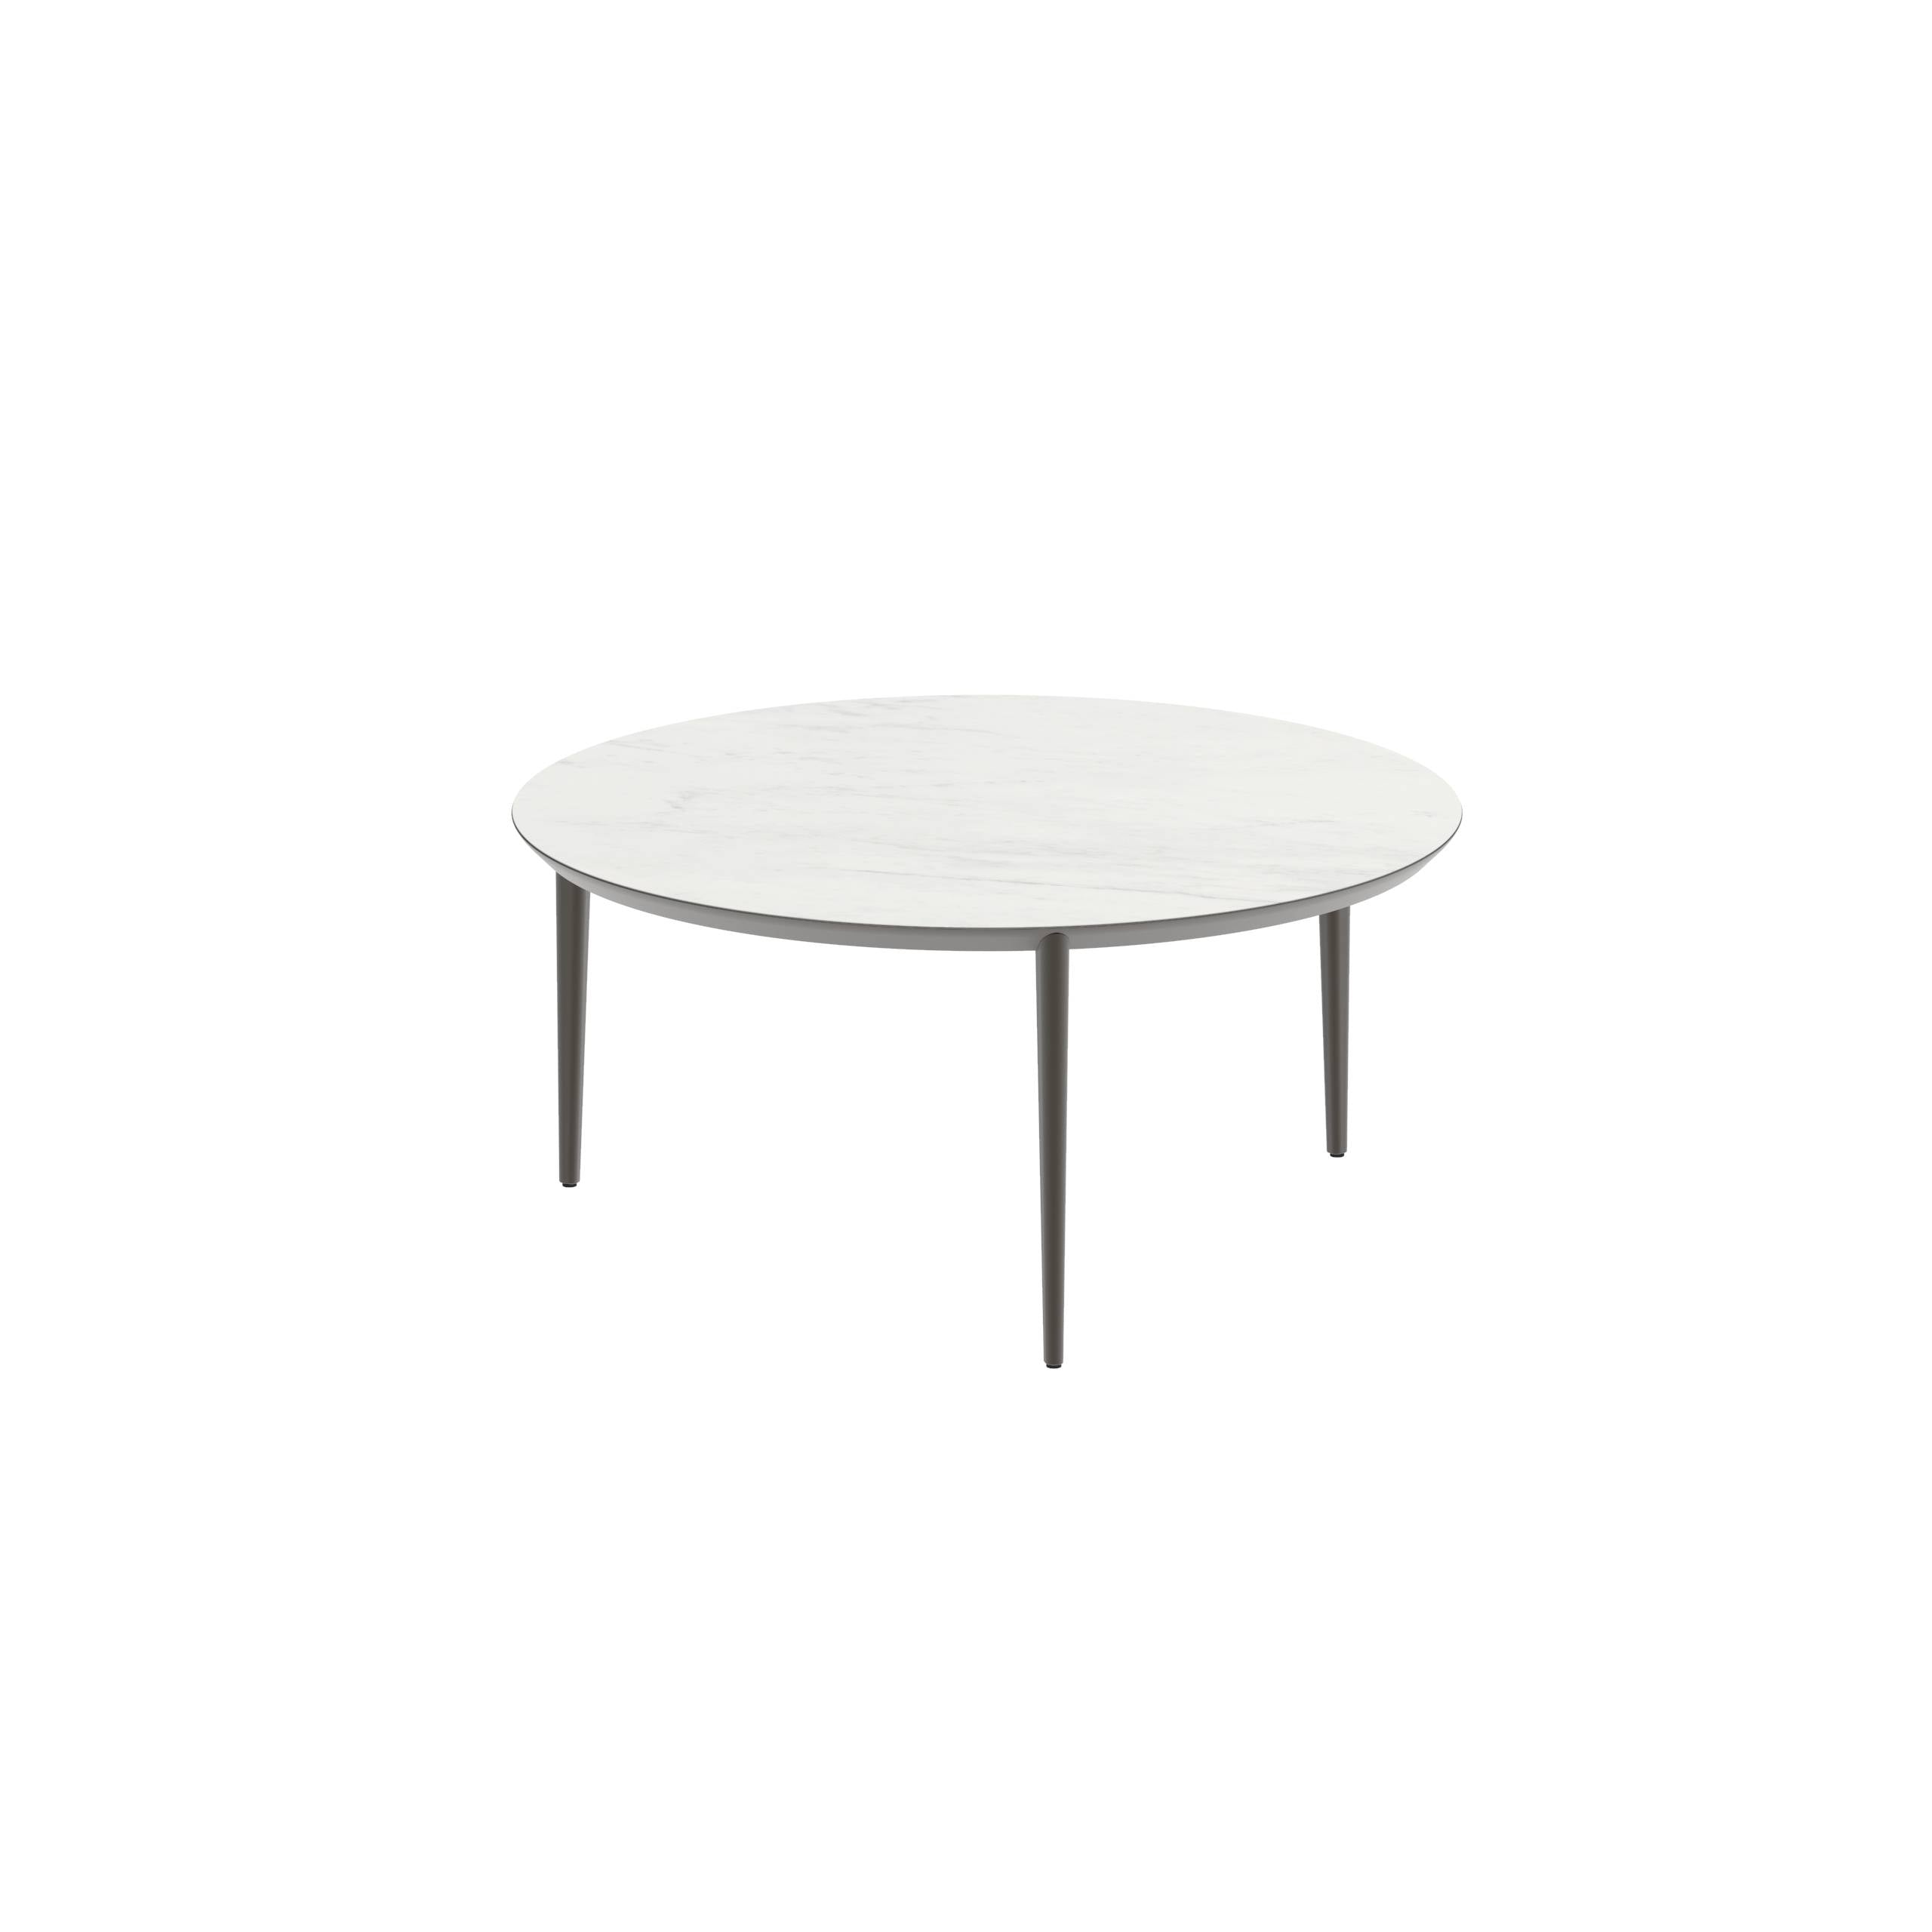 U-Nite Table Round Ø 160cm Alu Legs Bronze - Table Top Ceramic Bianco Statuario